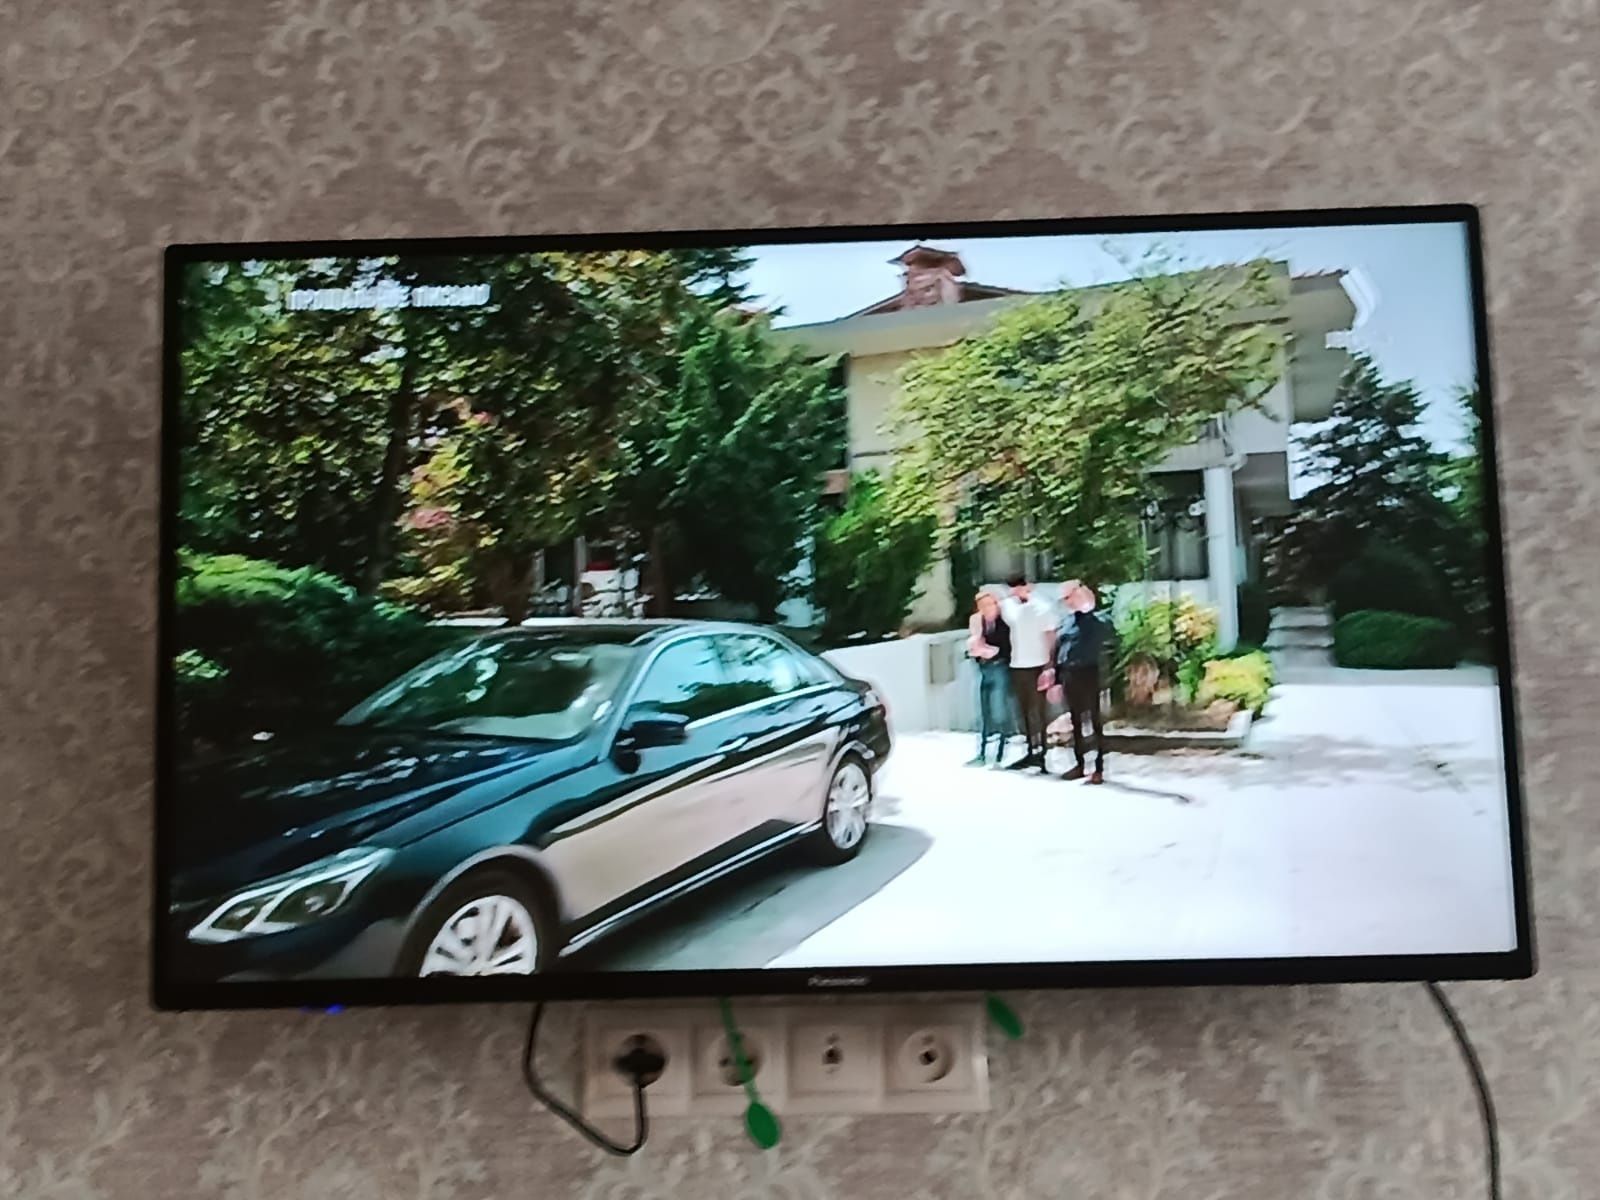 Телевизор Panasonic ЖК
Жидкокриссталлический,диагональ 110 см.С